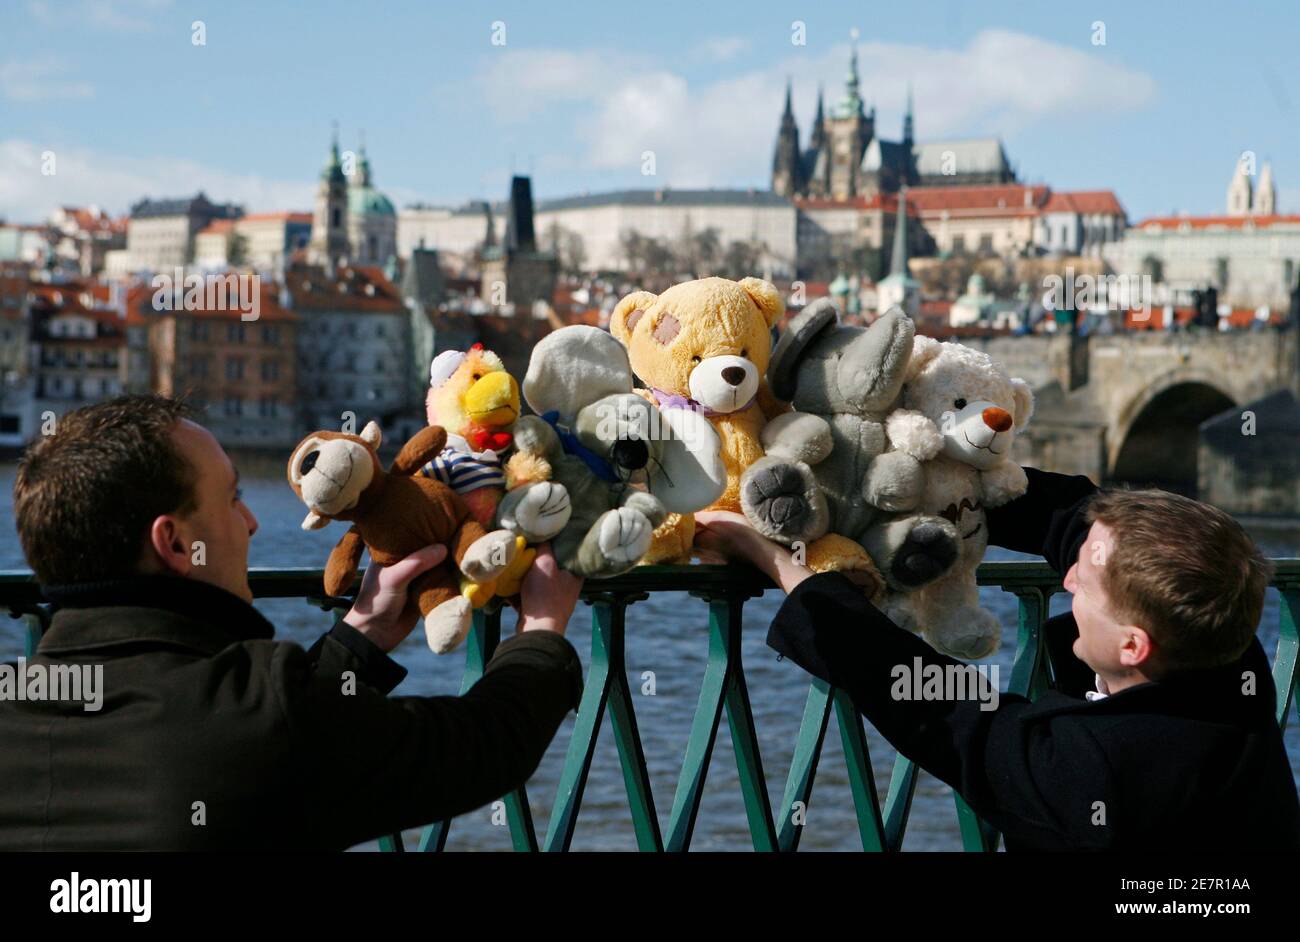 Assistenten von einem Reisebüro richten Sie Plüschtiere vor der Prager Burg  in Prag 27. Februar 2010. Das neugeformte Tschechische Reisebüro bietet  geführte Ausflüge für verwöhnte Spielzeug. Schicken sie Ihr Lieblingstier  und sie